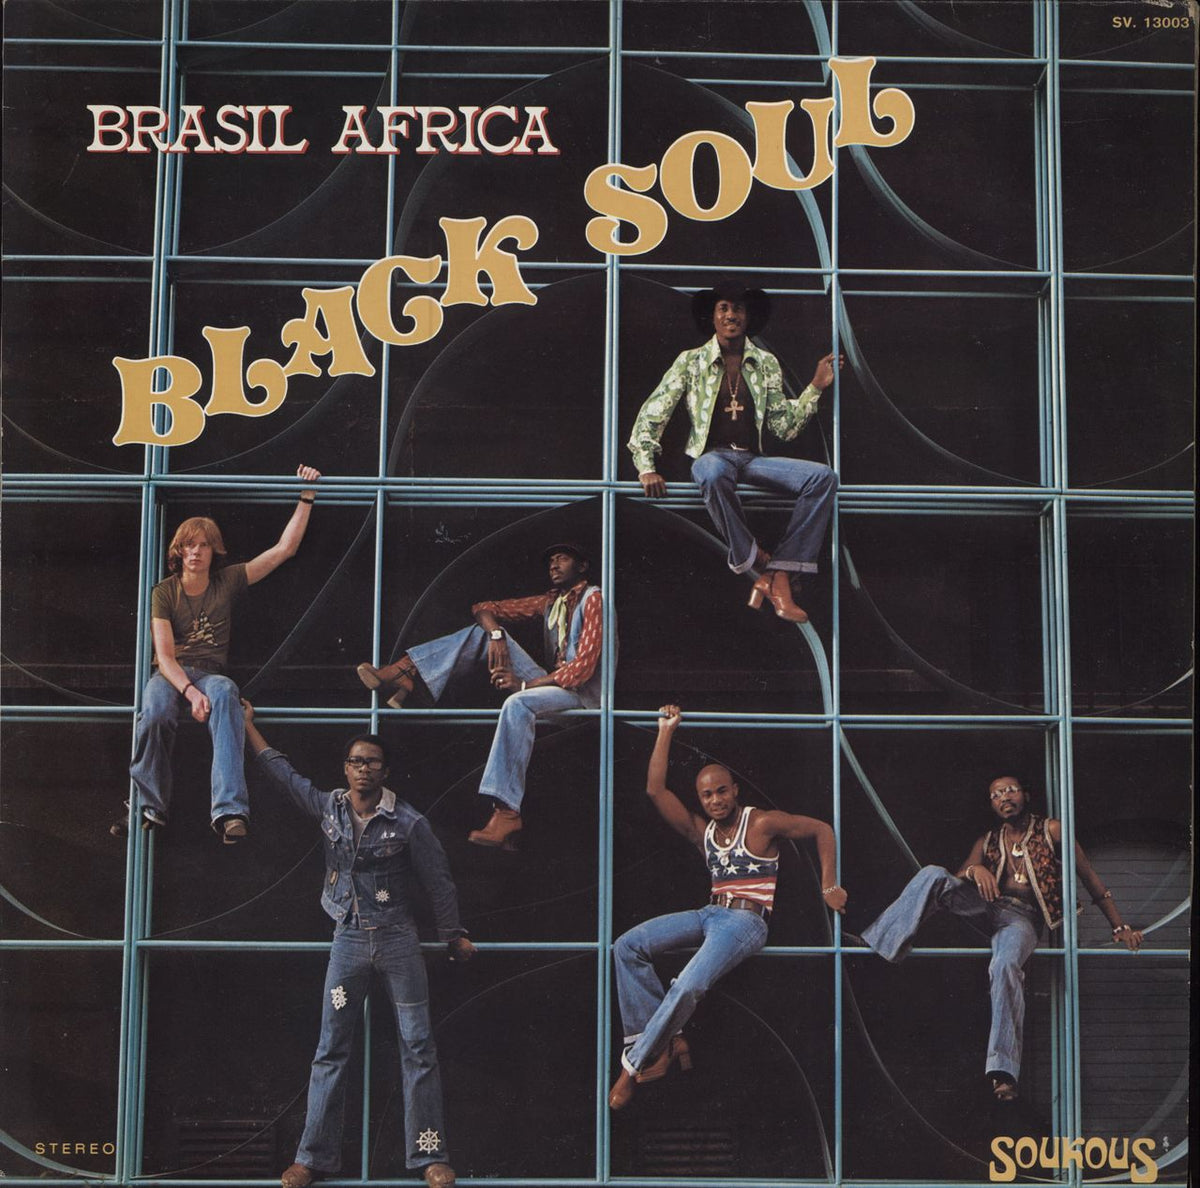 Black Soul Brasil Africa French Vinyl LP — RareVinyl.com